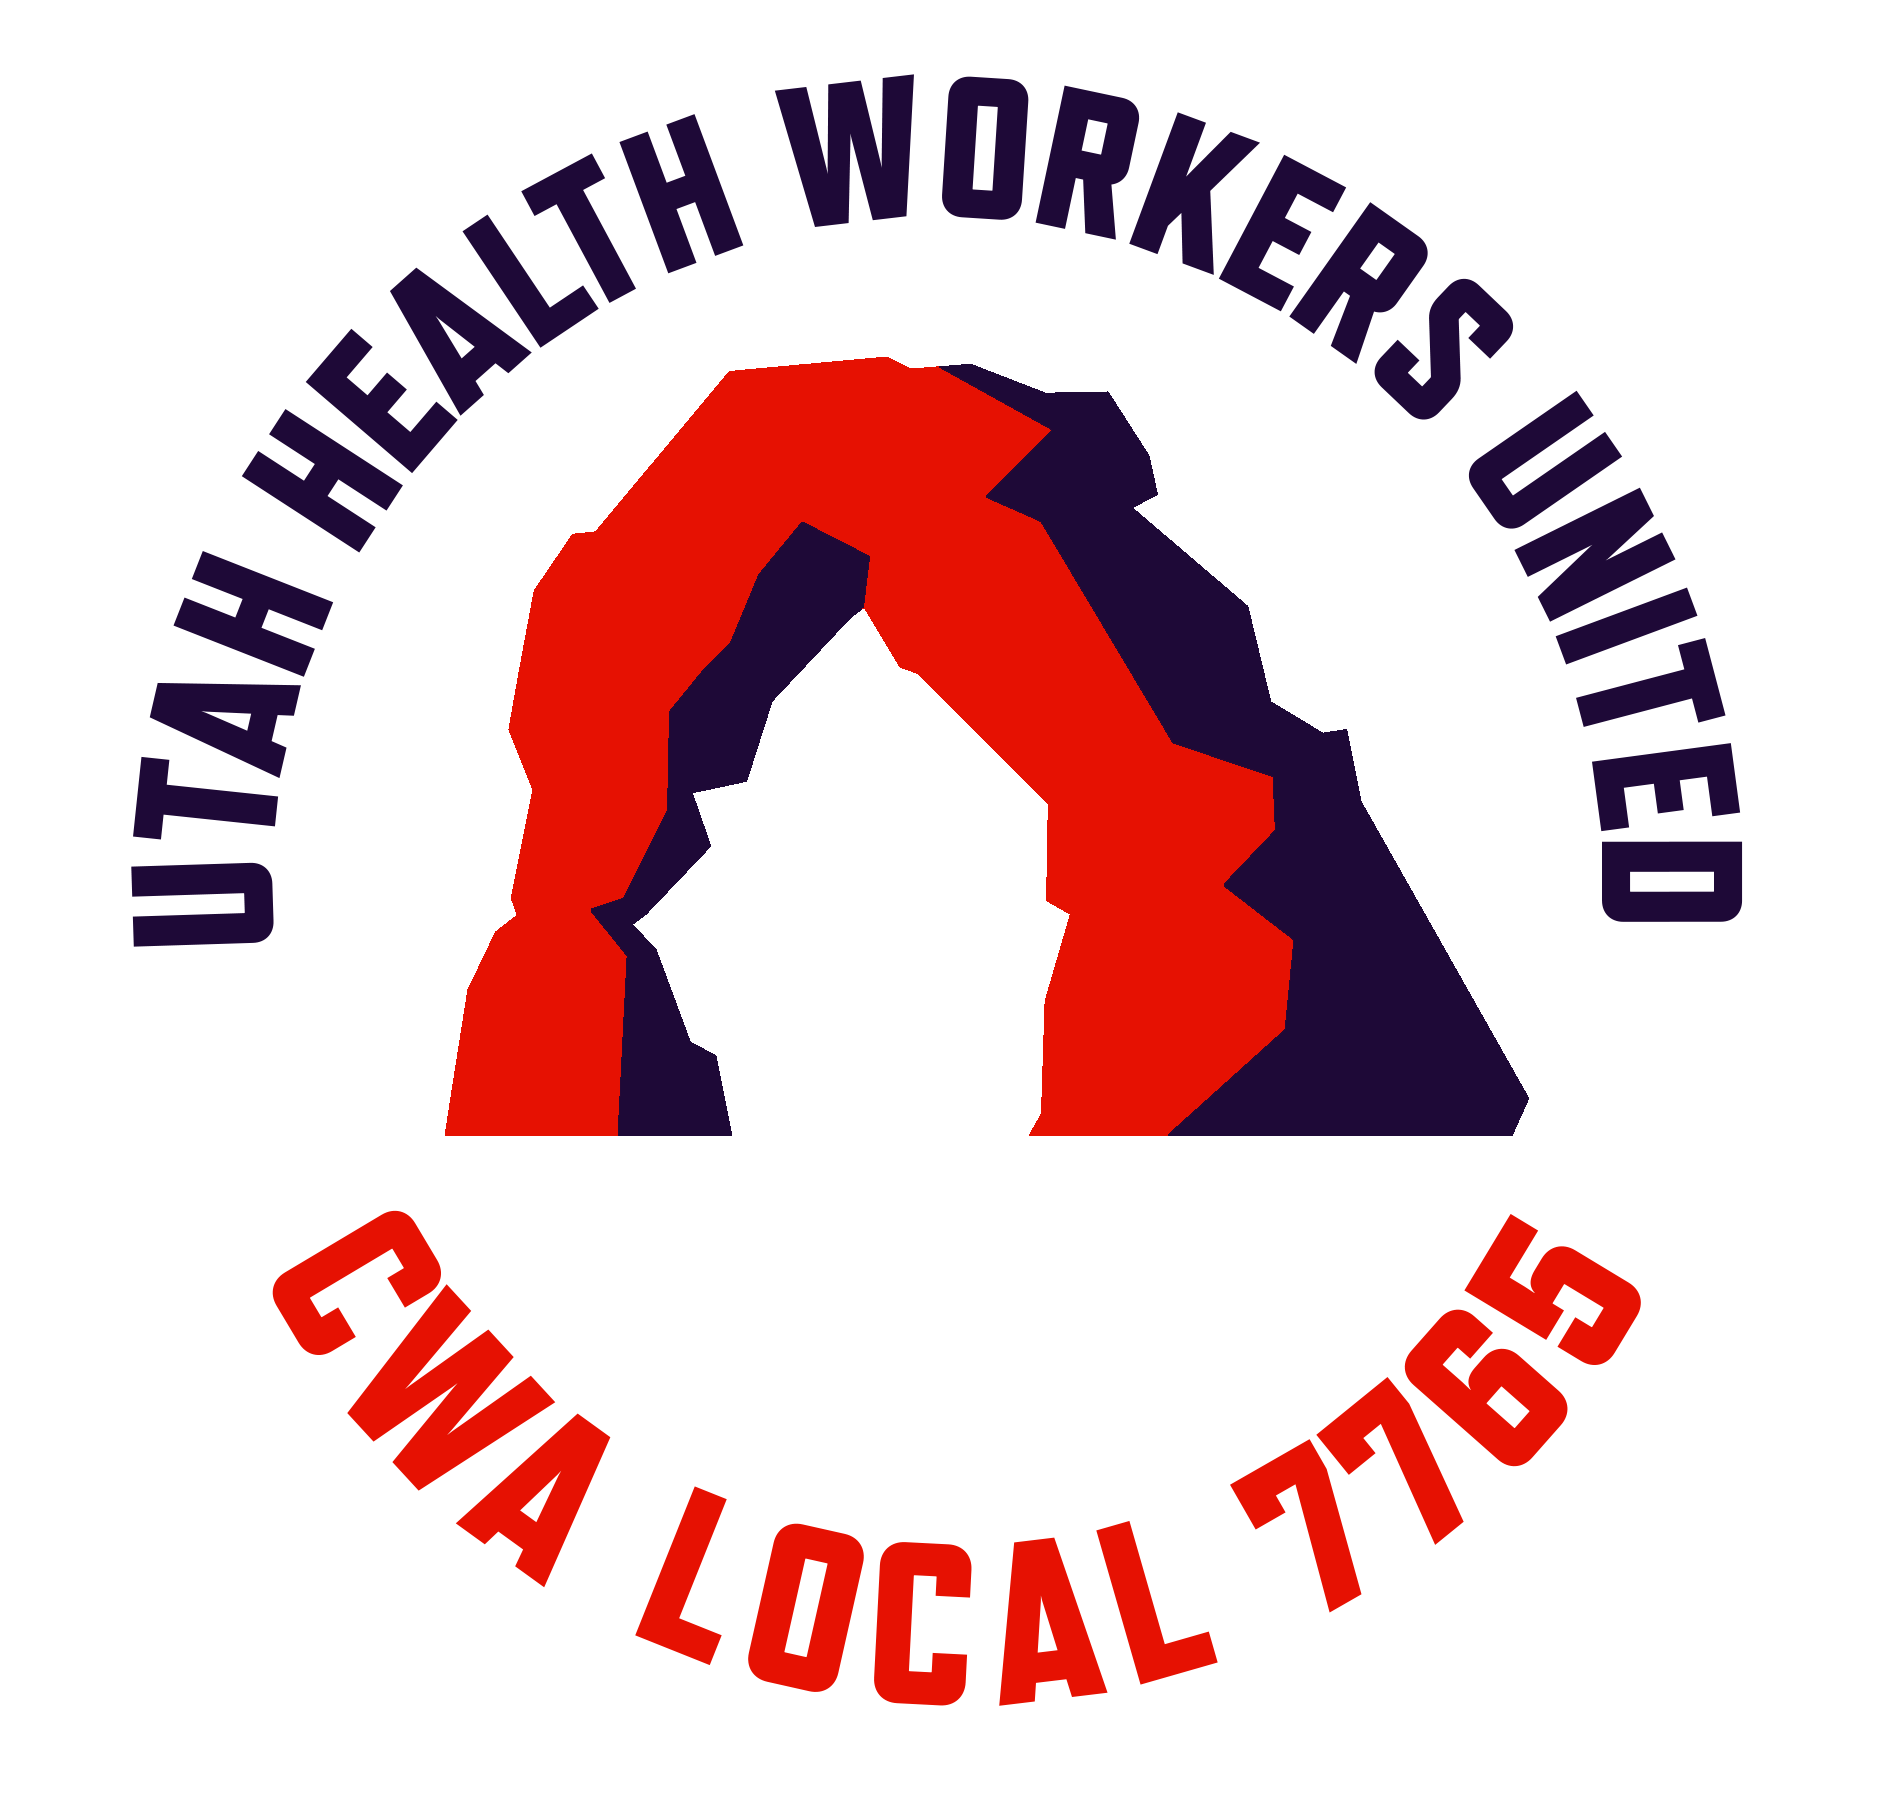 Utah Health Workers United